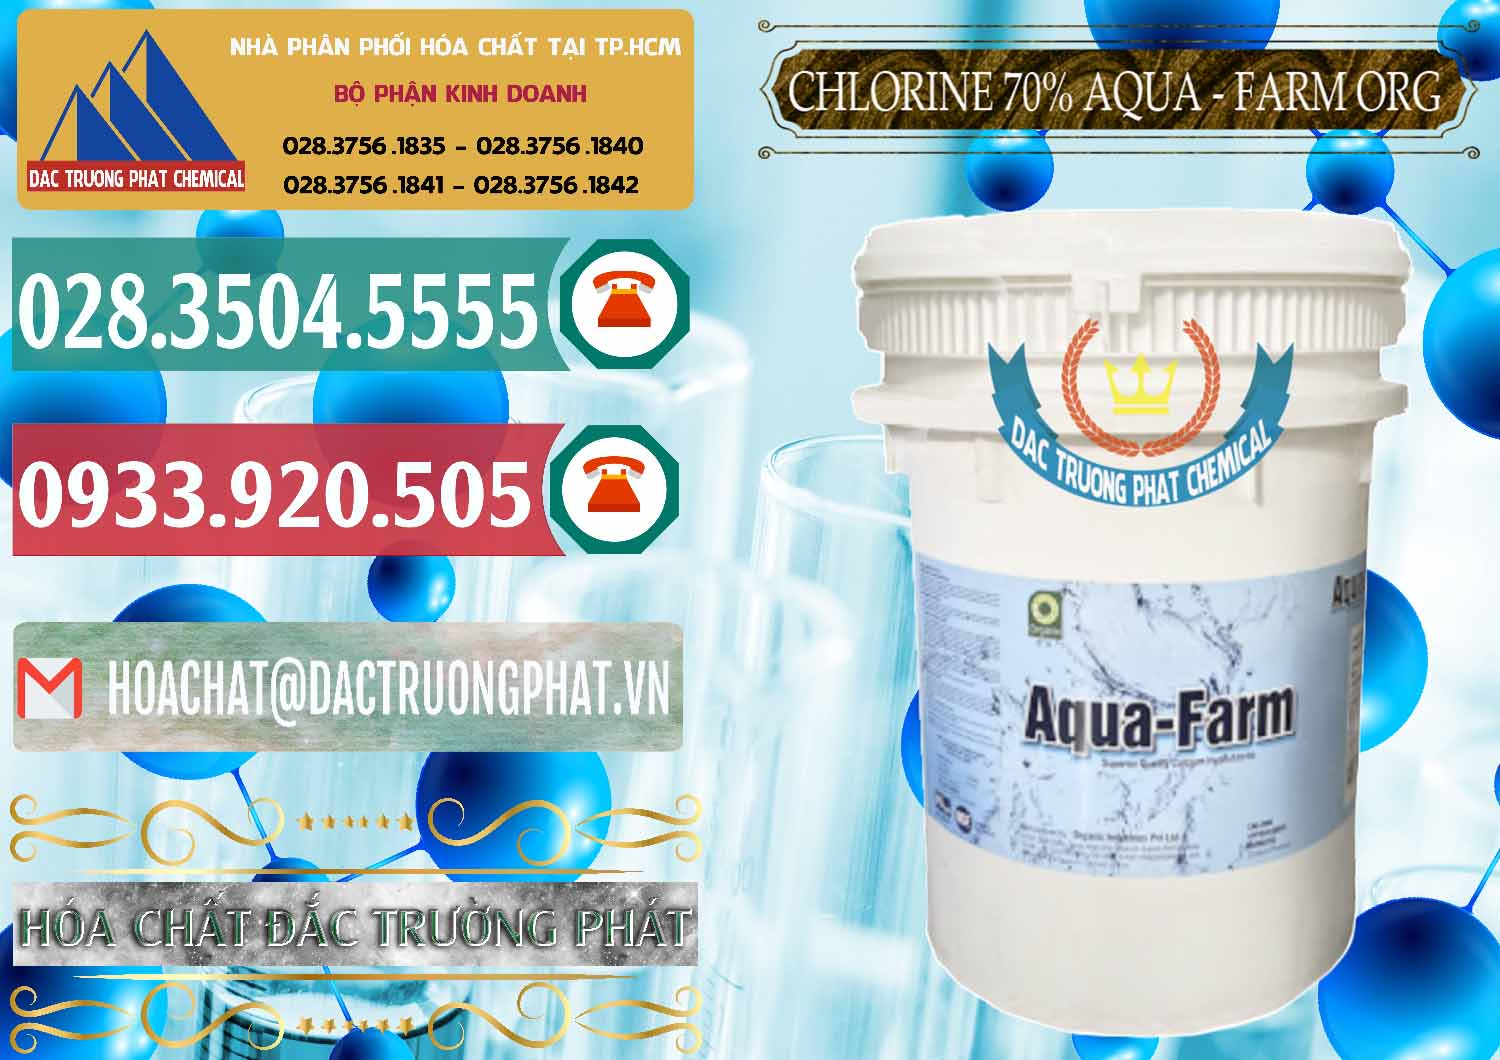 Cty cung ứng _ bán Chlorine – Clorin 70% Aqua - Farm ORG Organic Ấn Độ India - 0246 - Cty cung cấp _ nhập khẩu hóa chất tại TP.HCM - muabanhoachat.vn